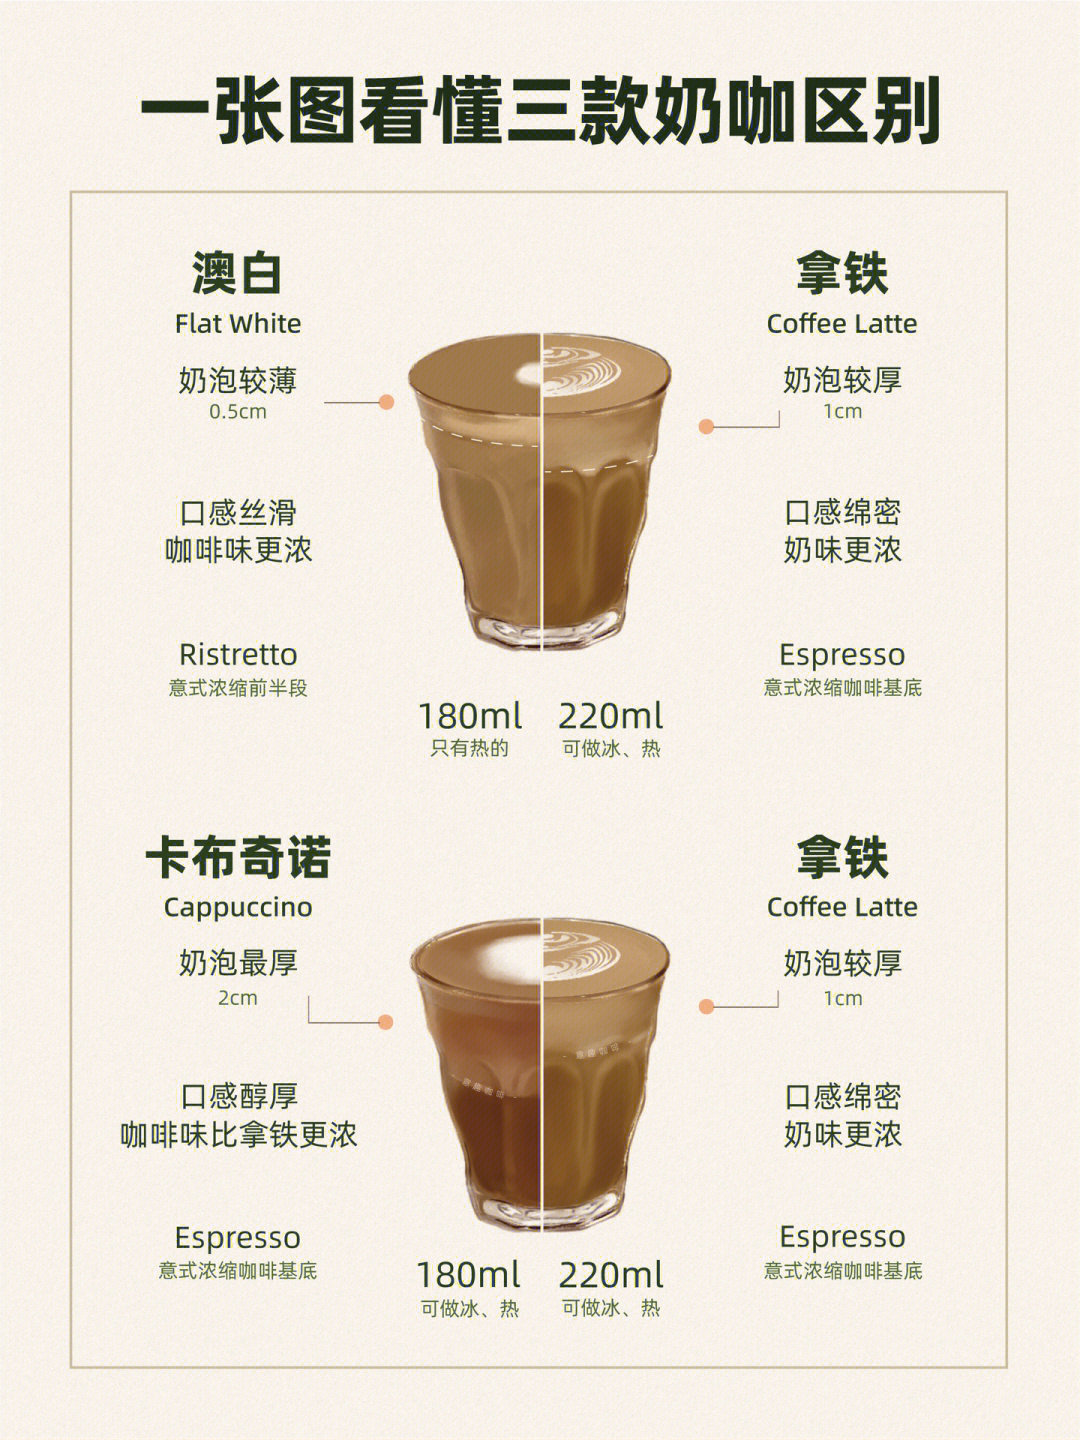 咖啡对比不同名称的奶咖有怎样的特点